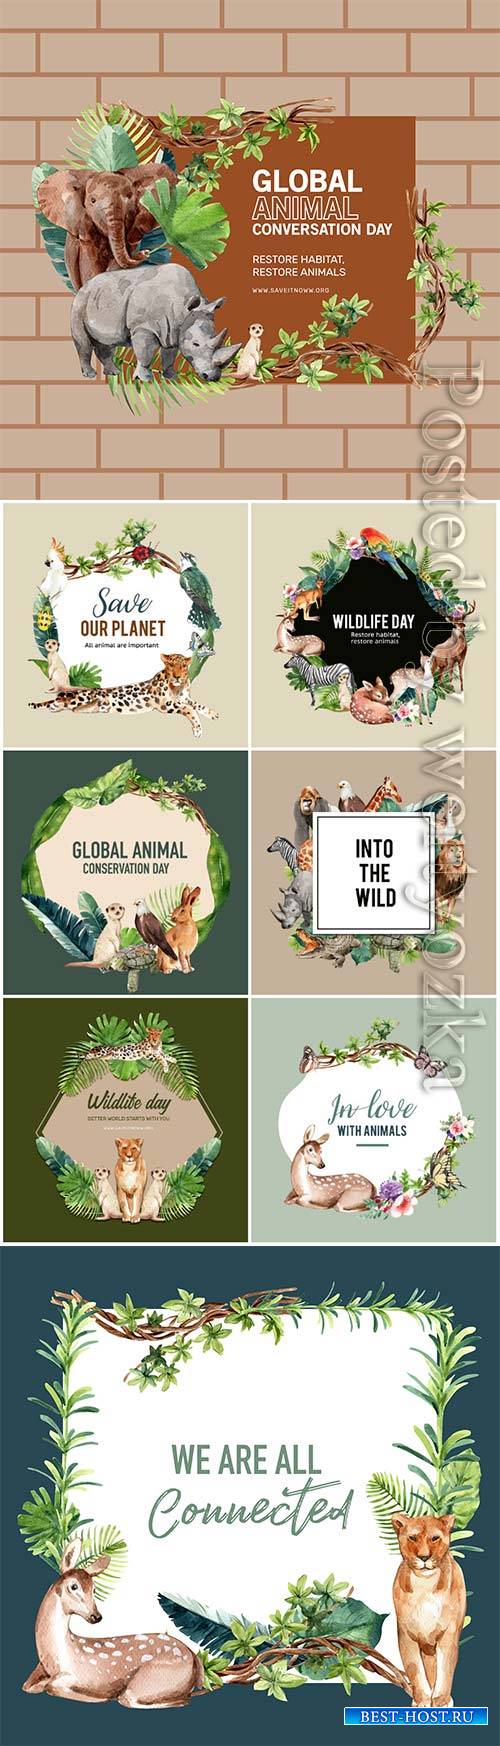 Zoo wreath design with eagle, gorilla, giraffe, rhino watercolor illustration